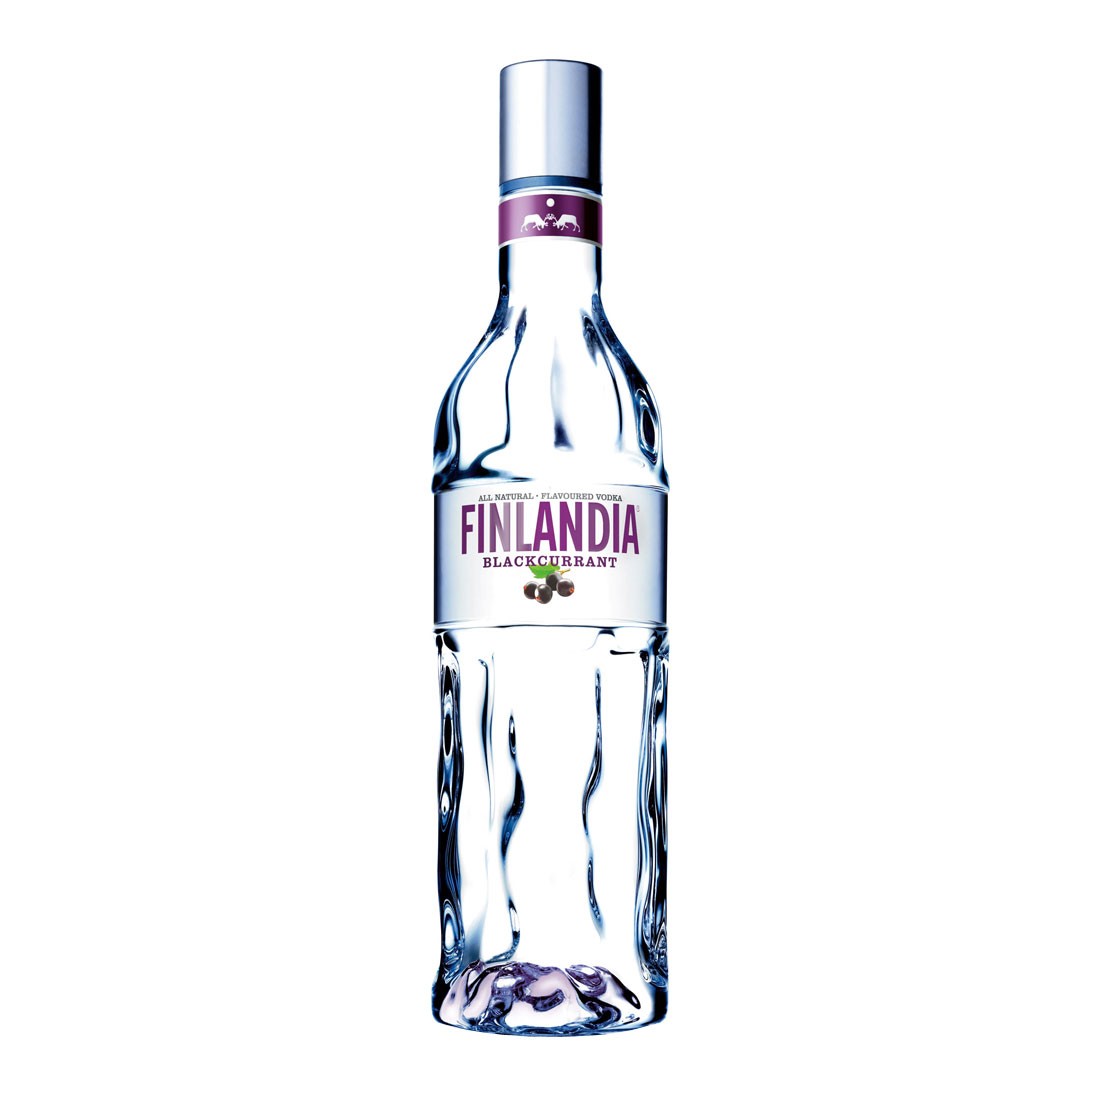 Finlandia Vodka Black currant 100cl